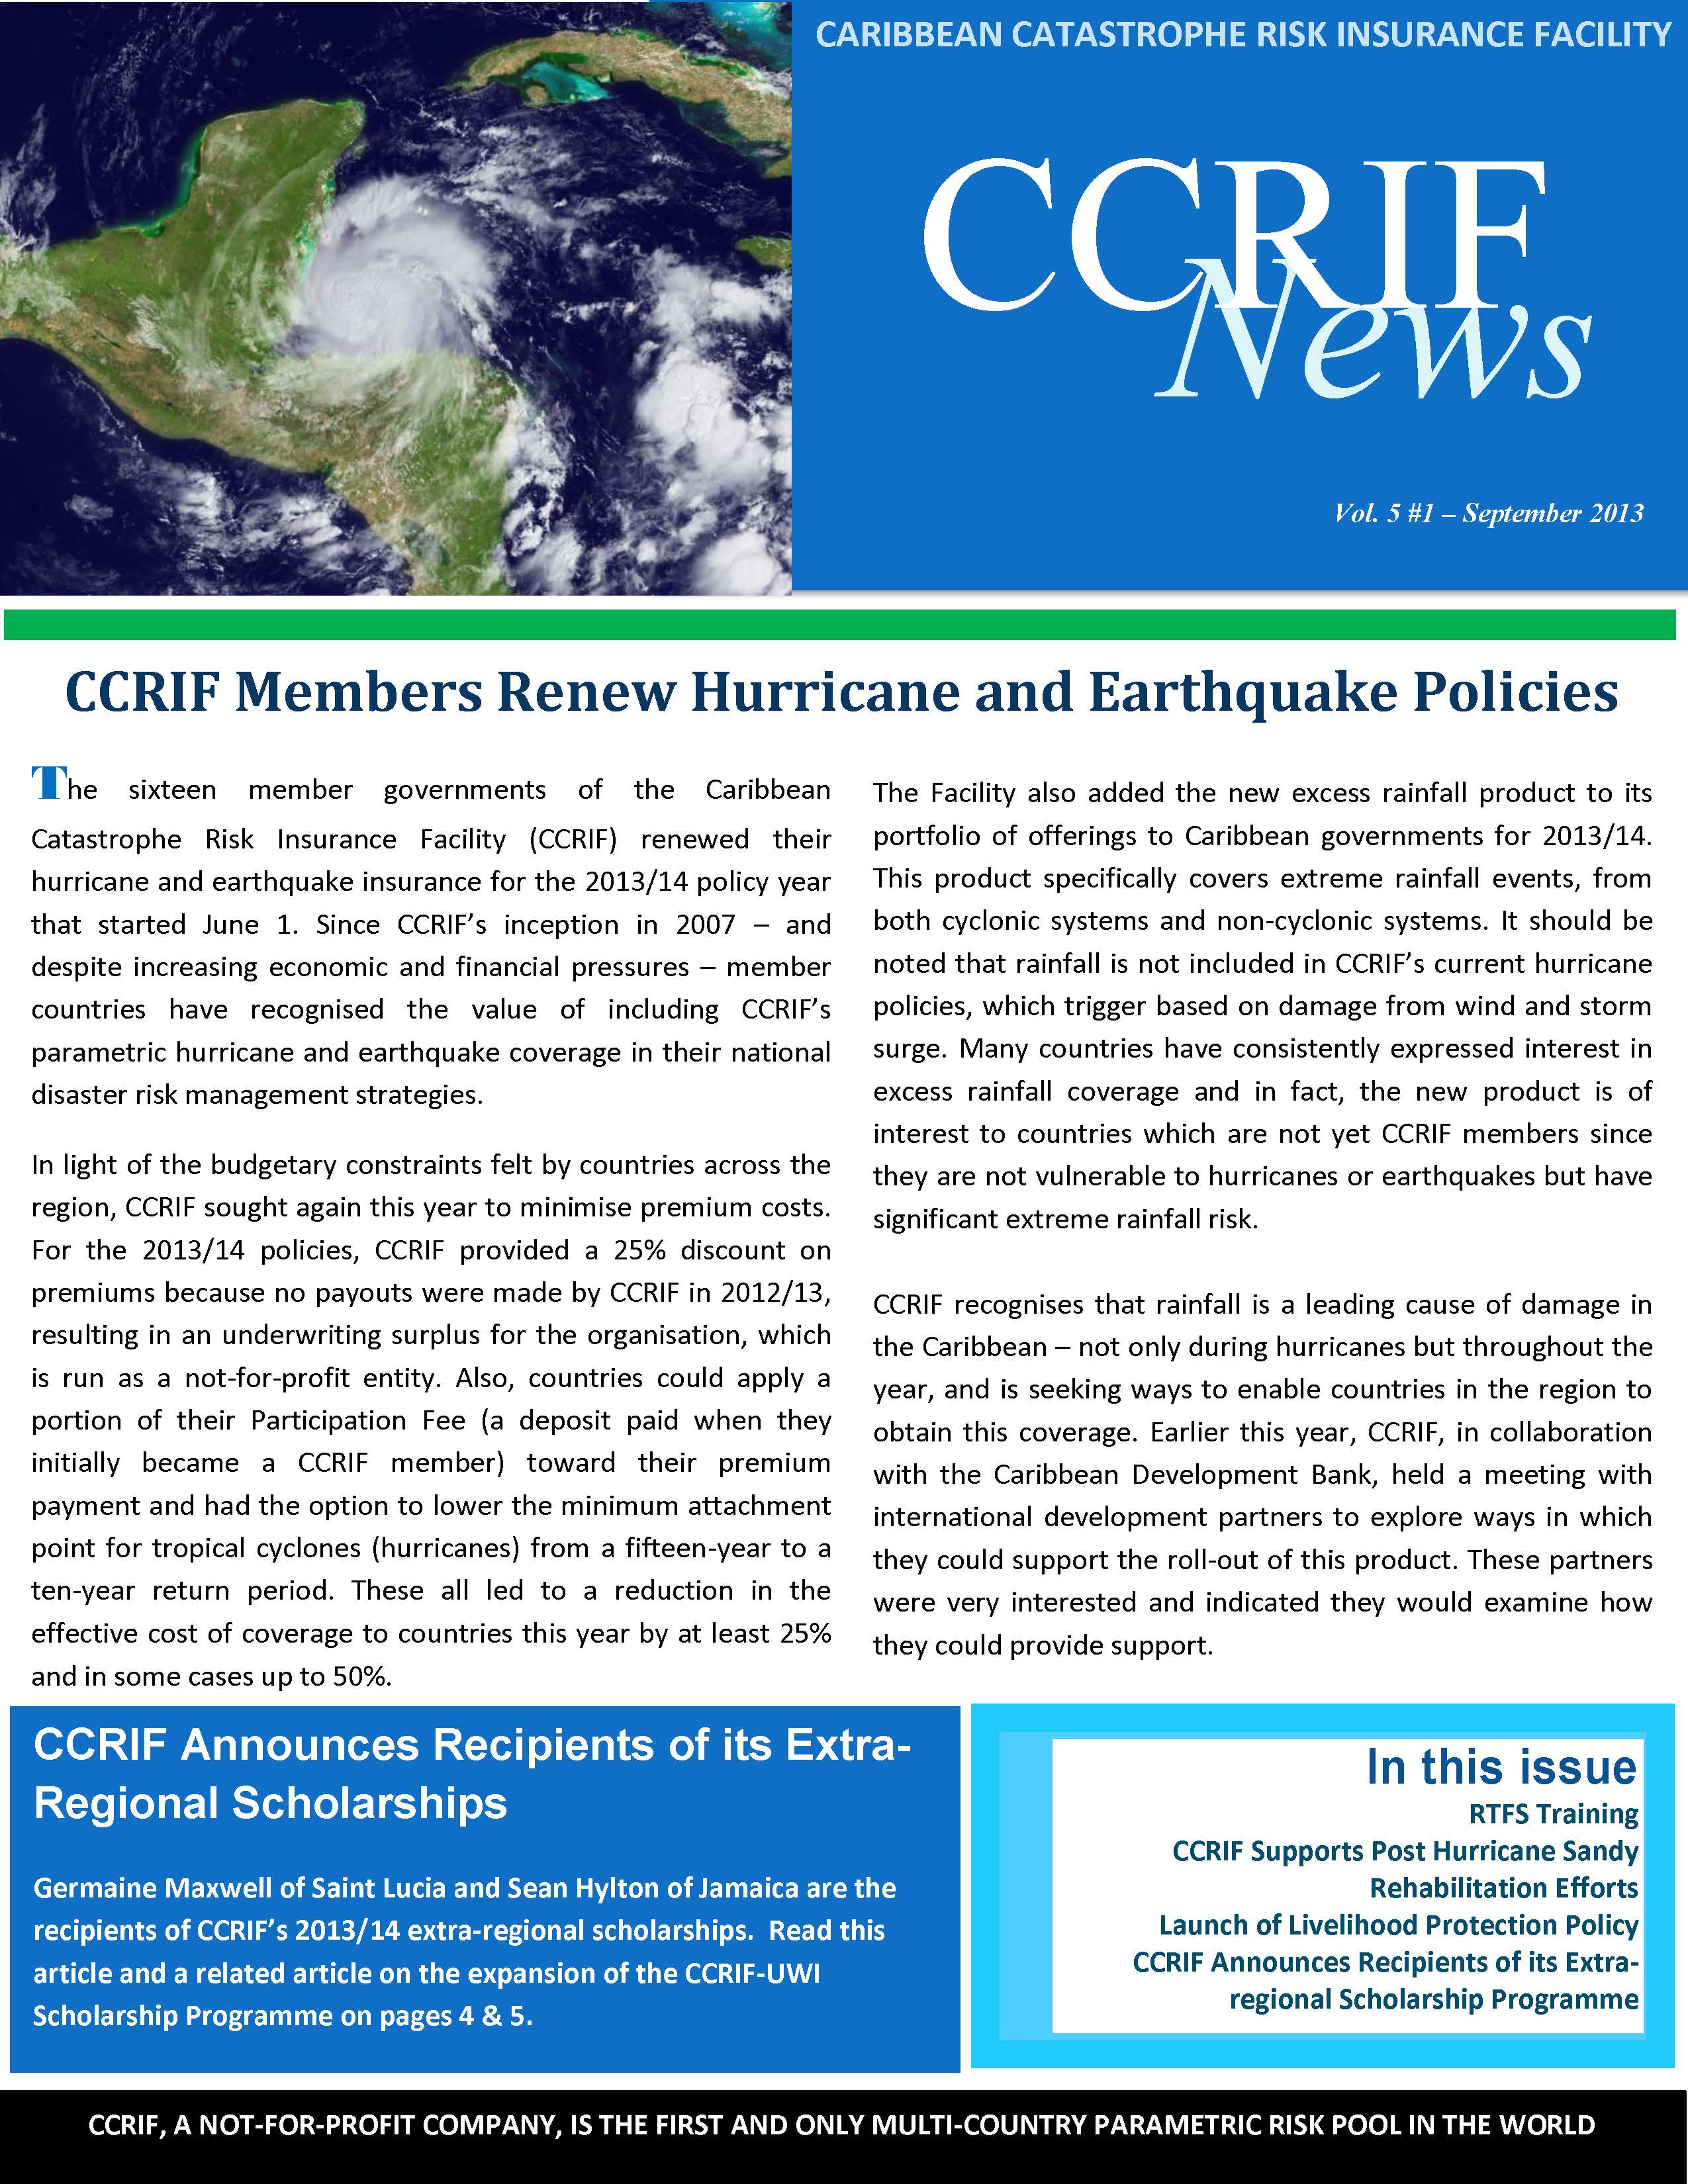 CCRIF News - Vol 5, No 1 - September 2013